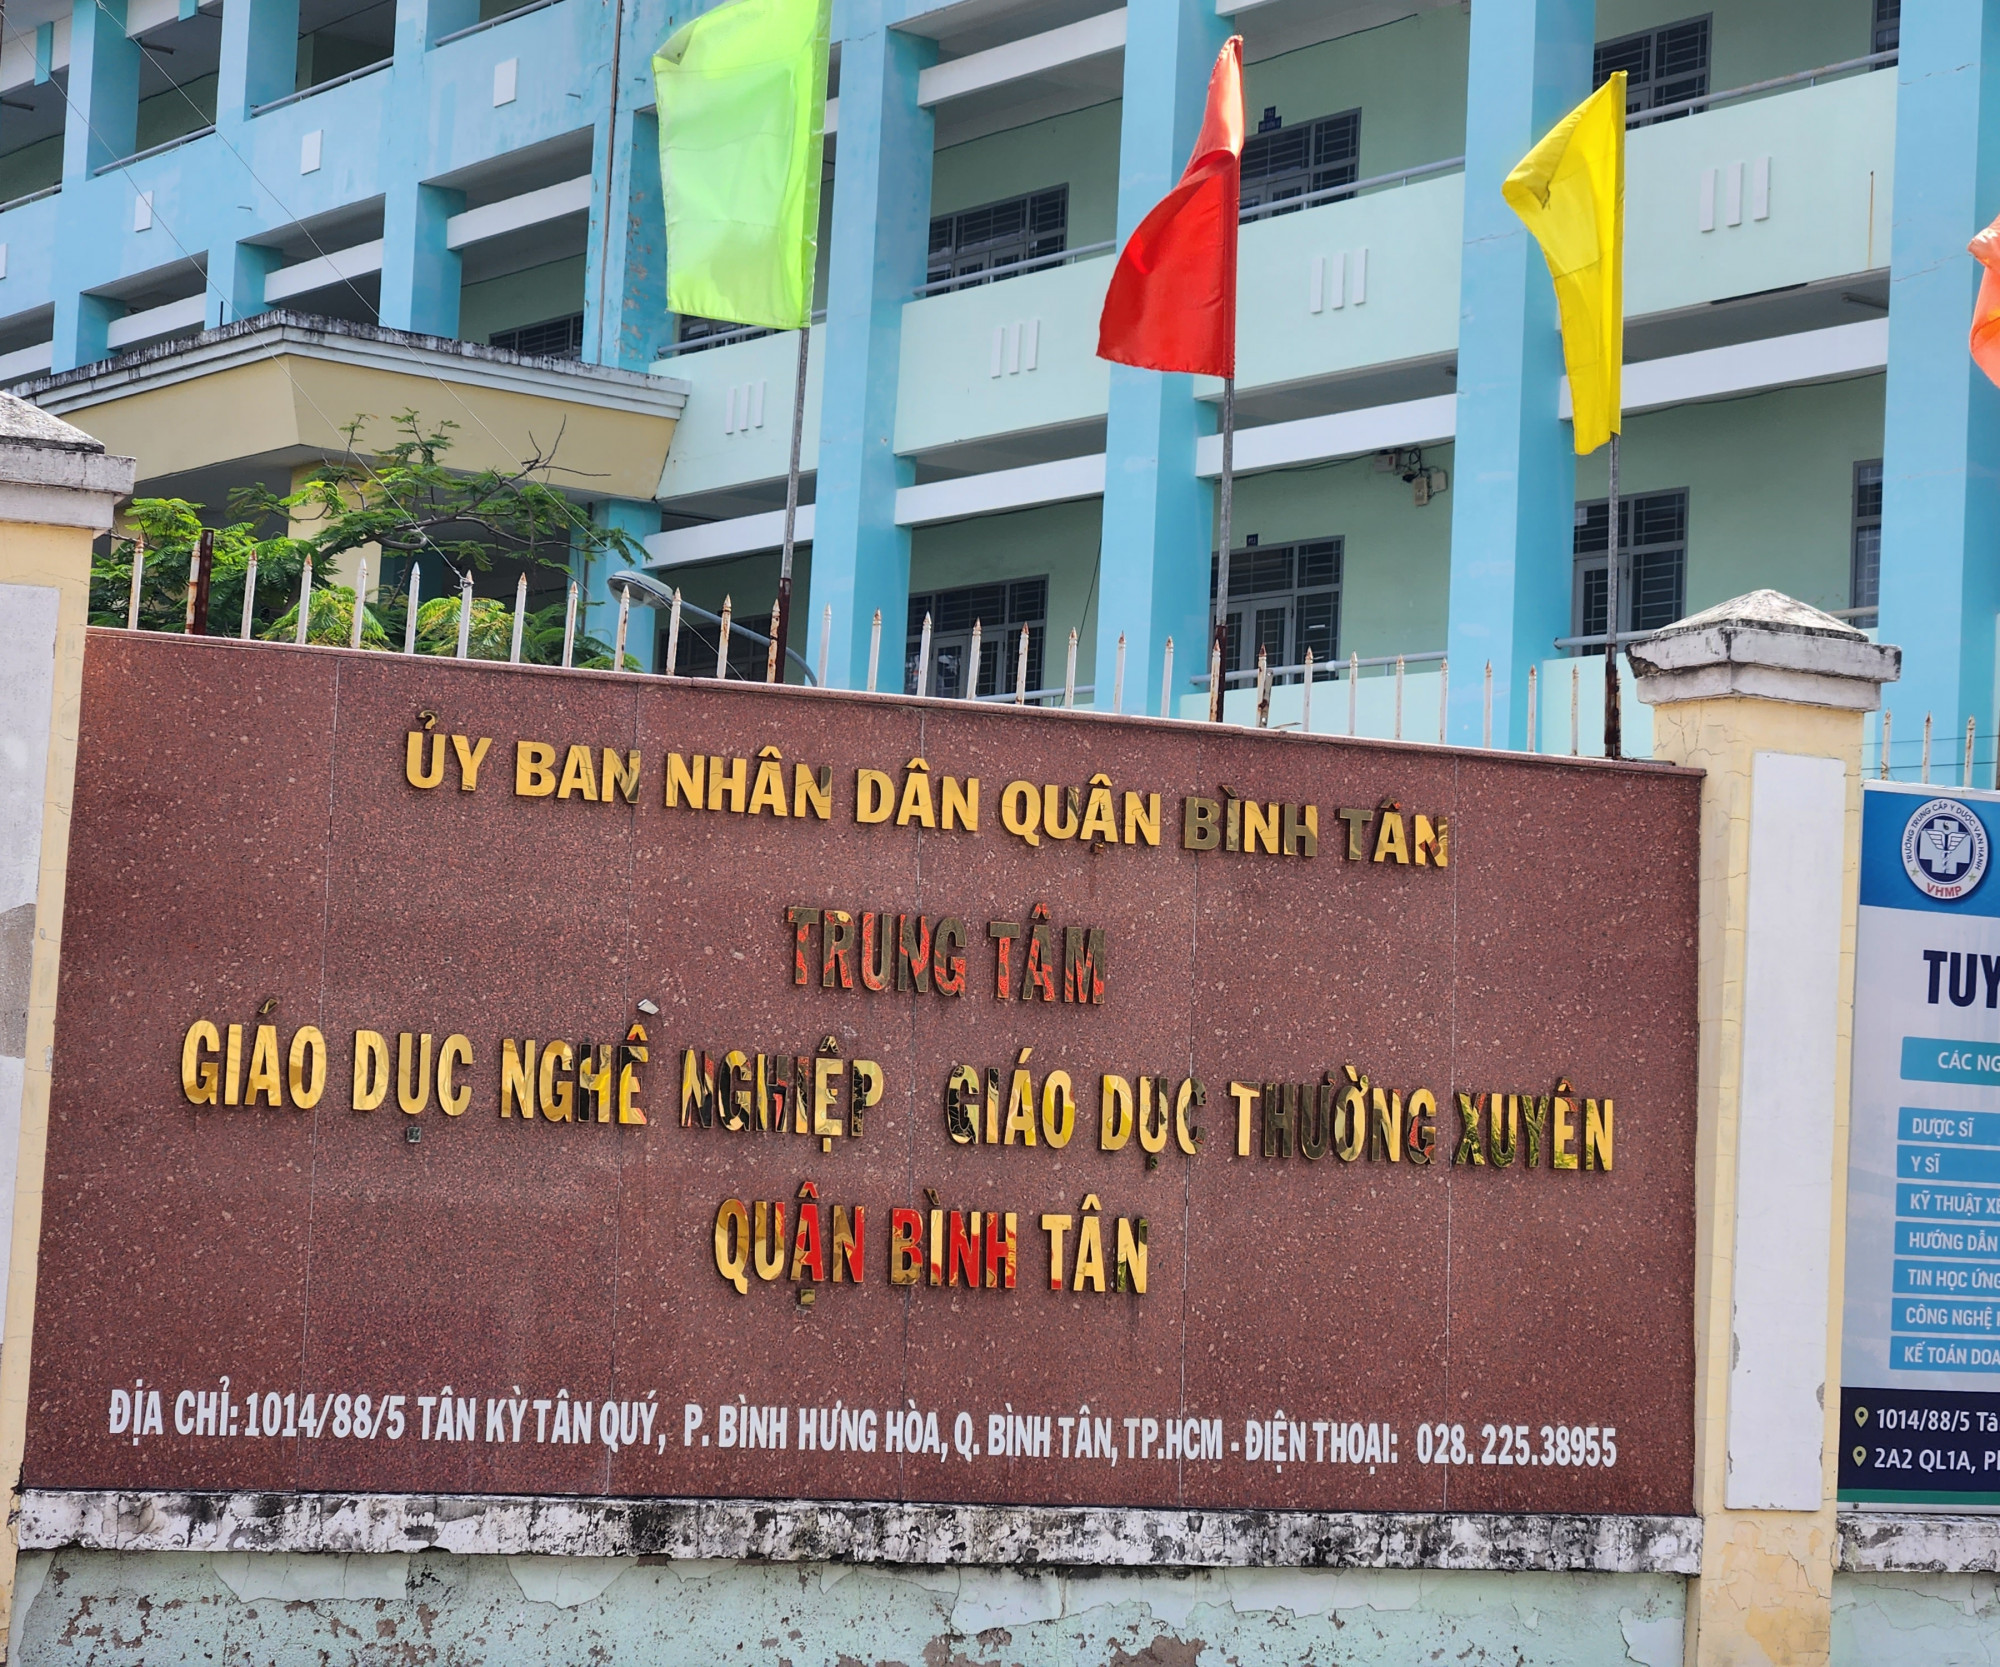 Trung tâm GDNN-GDTX quận Bình Tân nơi xảy ra sự việc